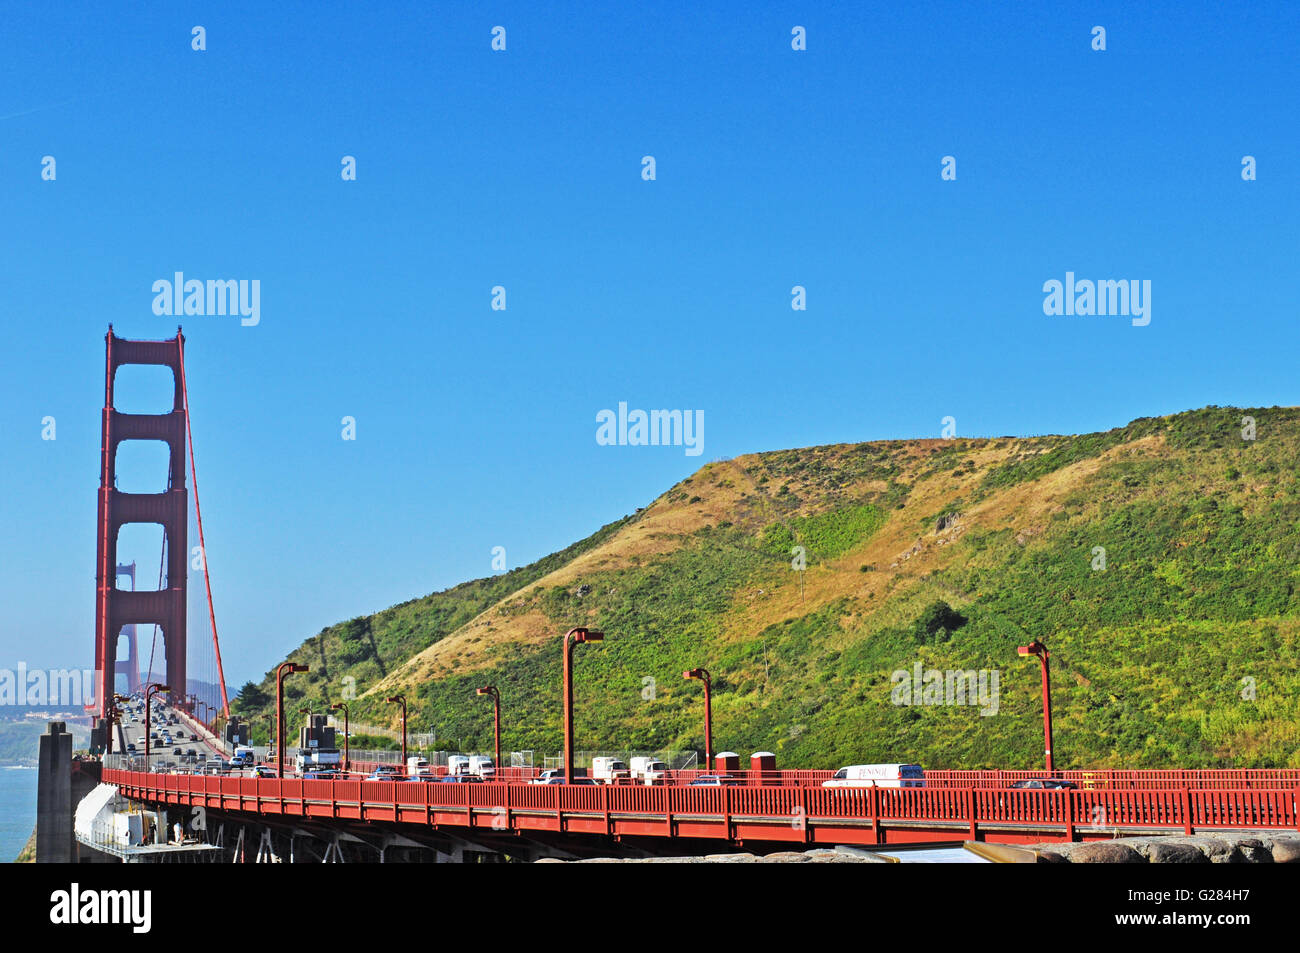 California, Estados Unidos de América, EE.UU.: Vista del Puente Golden Gate Bridge, inaugurado en 1936, el símbolo de la ciudad de San Francisco en el mundo Foto de stock